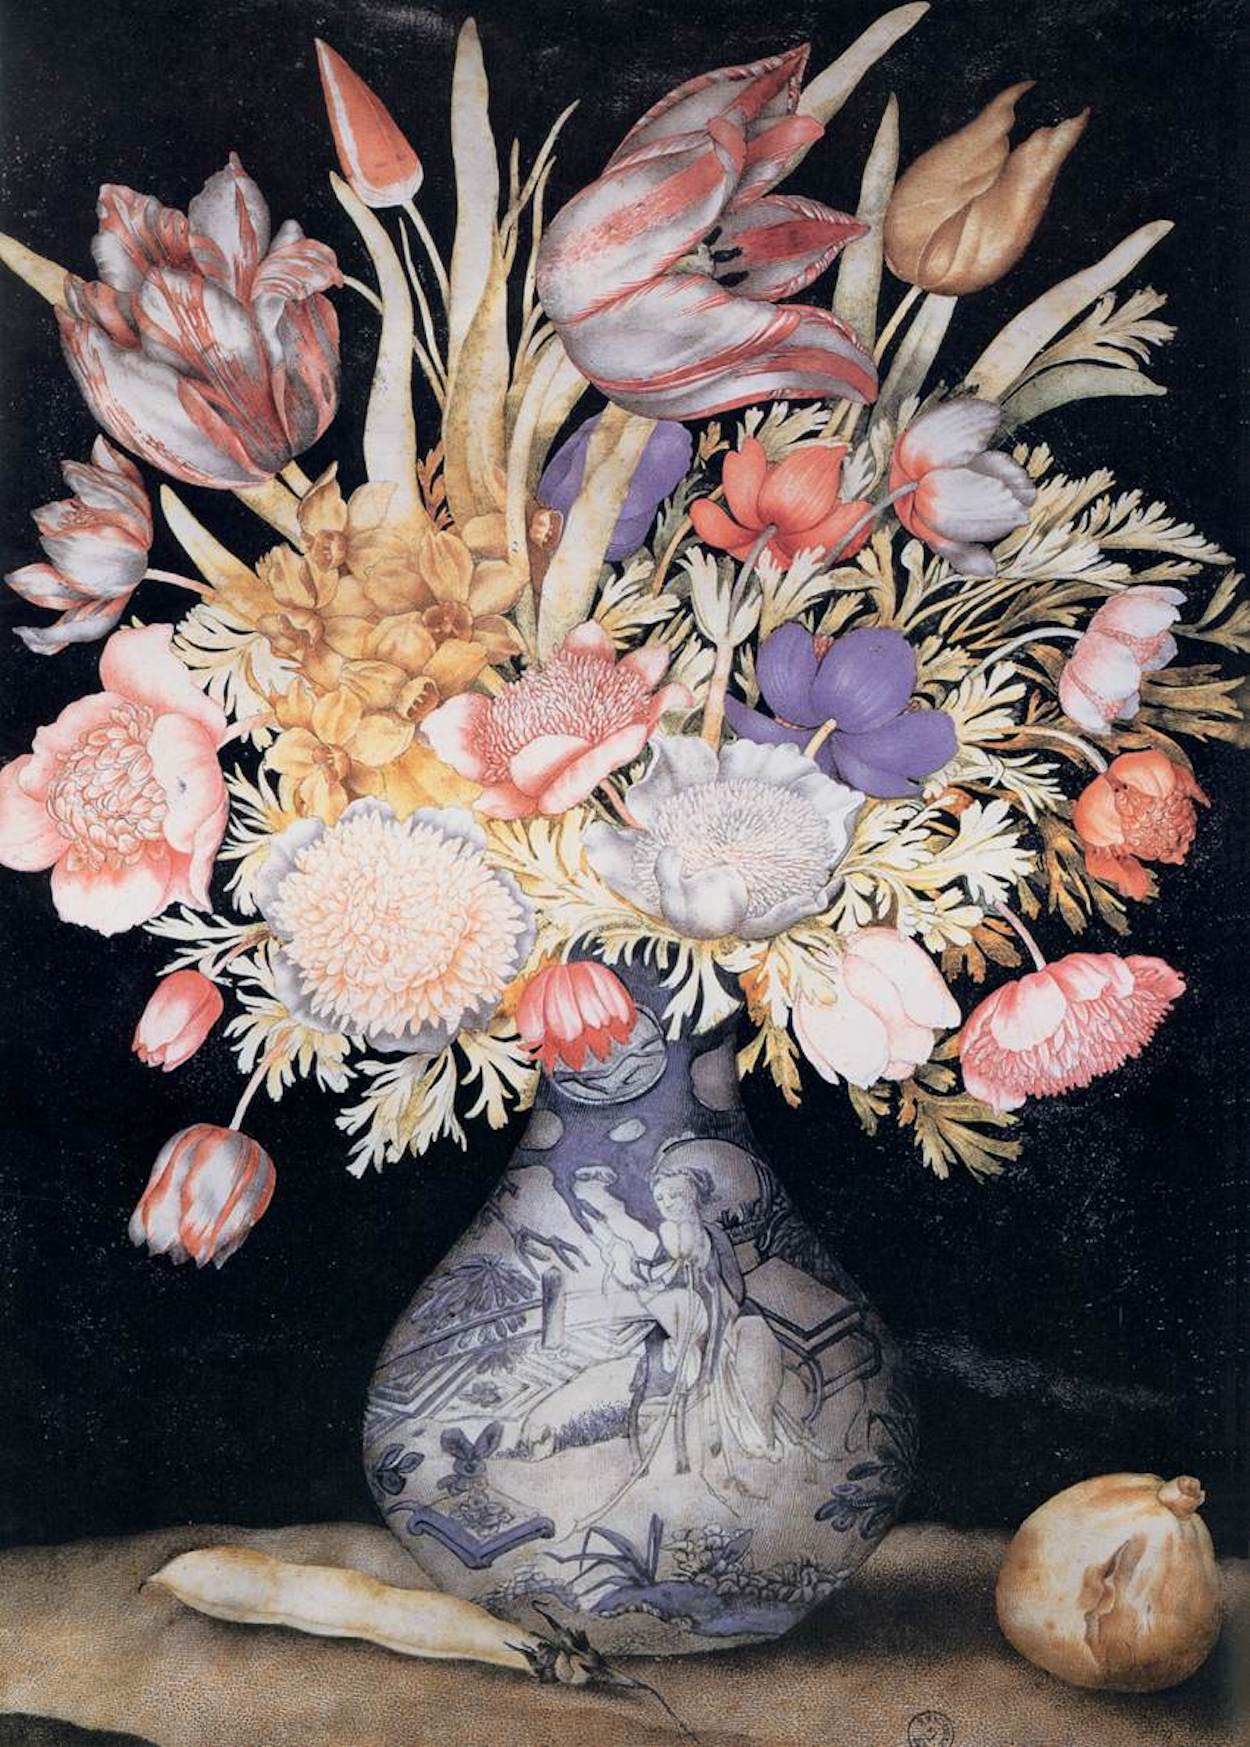 Čínská váza s květinami a ovocem by Giovanna Garzoni - cca 1641–1652 - 51 x 36,9 cm 